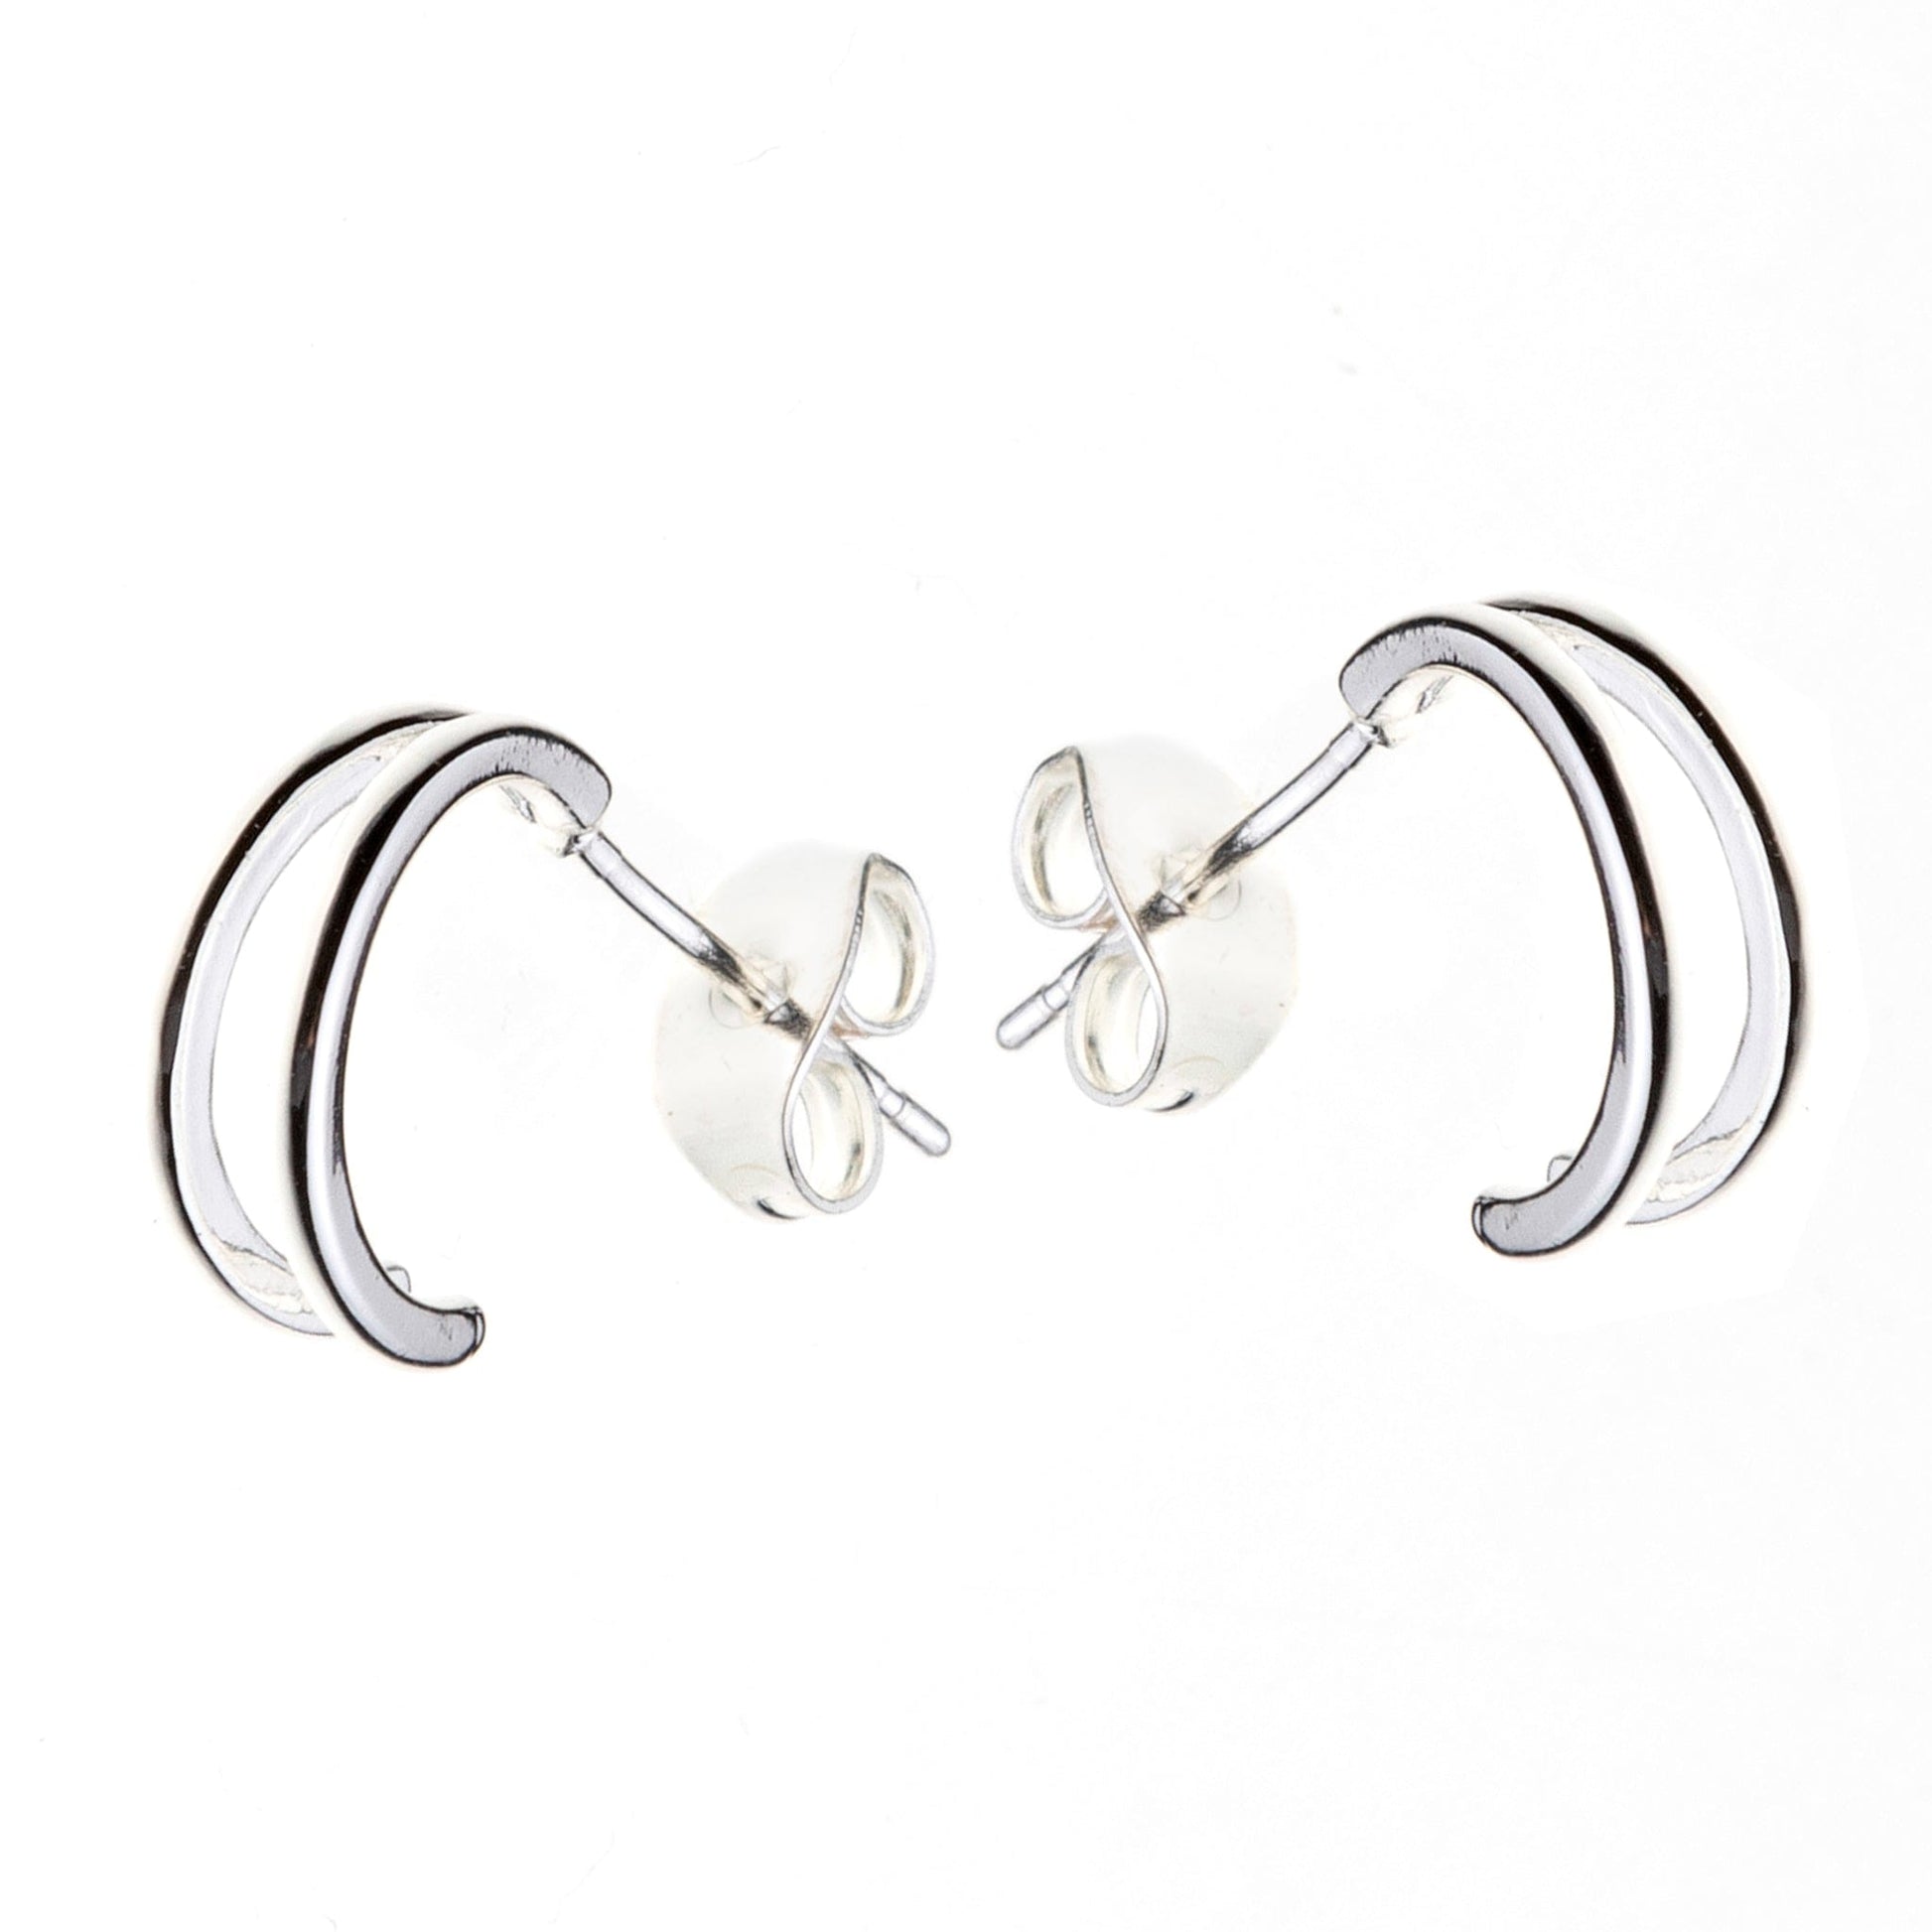 Double bar silver mini hoop earrings